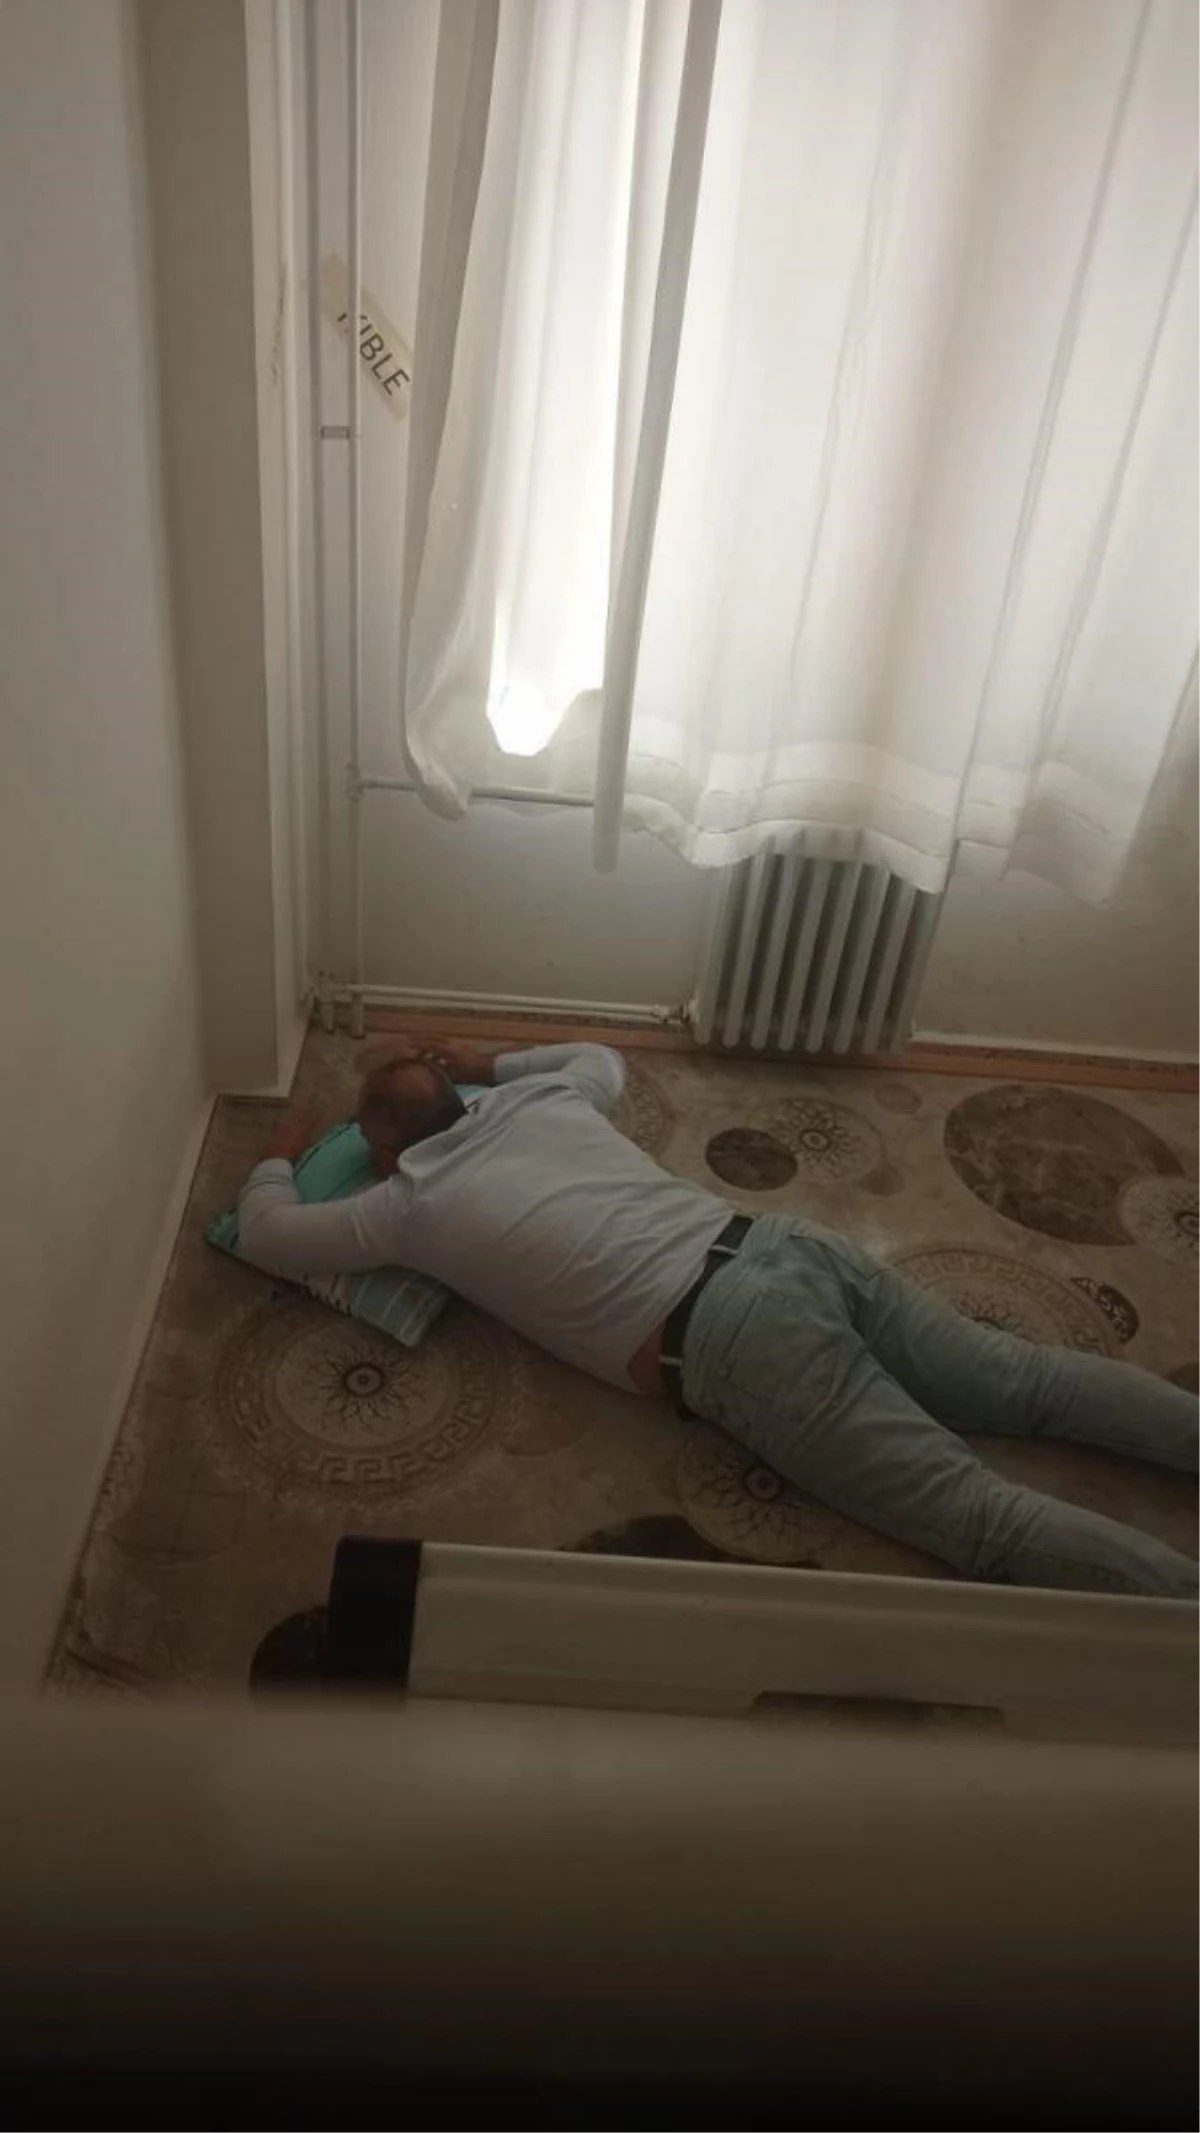 Okul Müdürü Mescitte Uyurken Fotoğraflandı, Fotoğrafı Çekenler Hakkında Soruşturma Açıldı